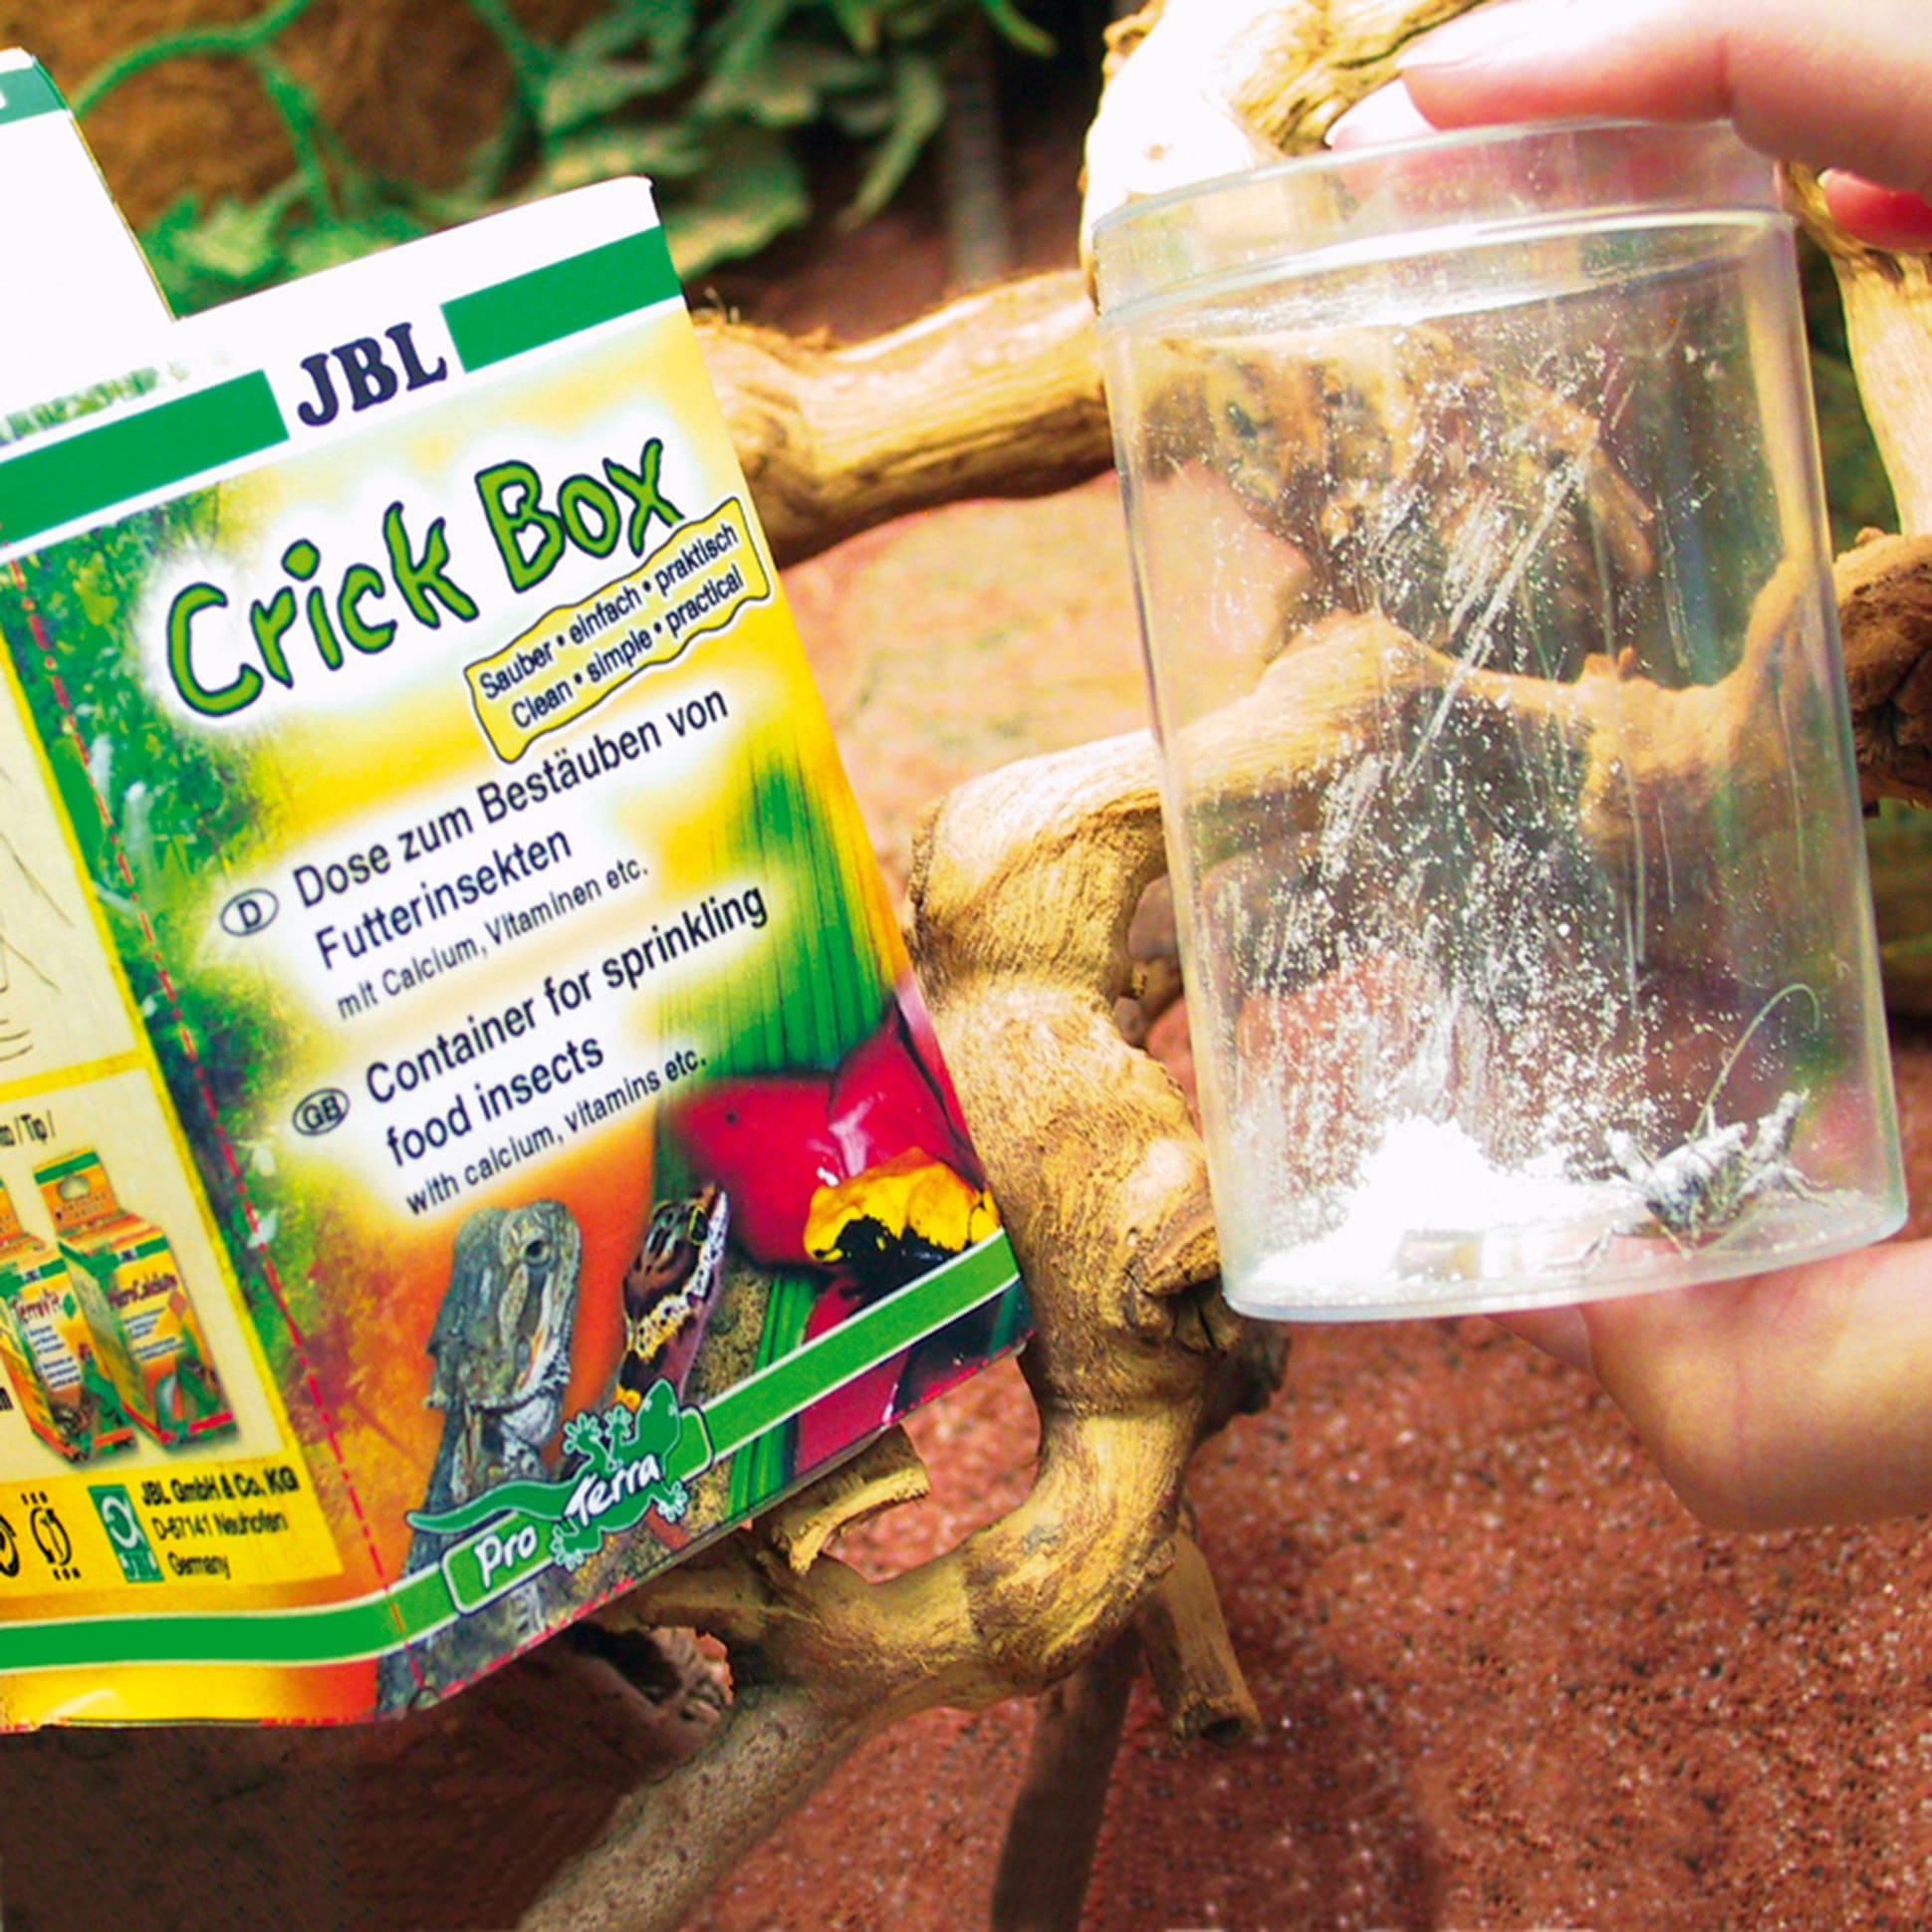 jbl-crickbox-boite-saupoudreuse-pour-enrichir-les-aliments-a-base-d-insectes-2-min